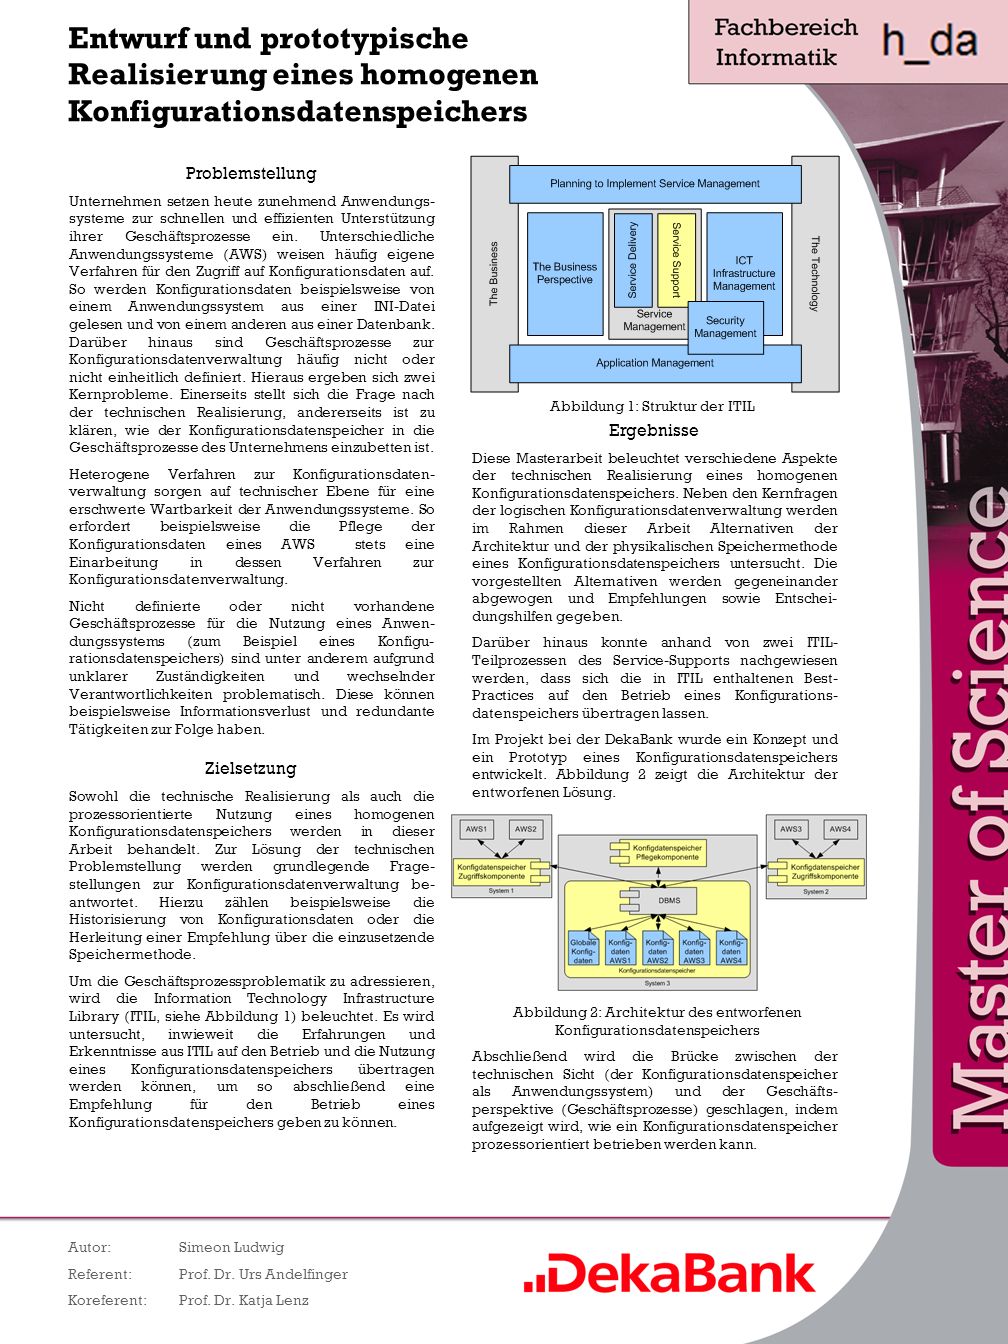 Entwurf und prototypische Realisierung eines homogenen Konfigurationsdatenspeichers Autor:Simeon Ludwig Referent:Prof.